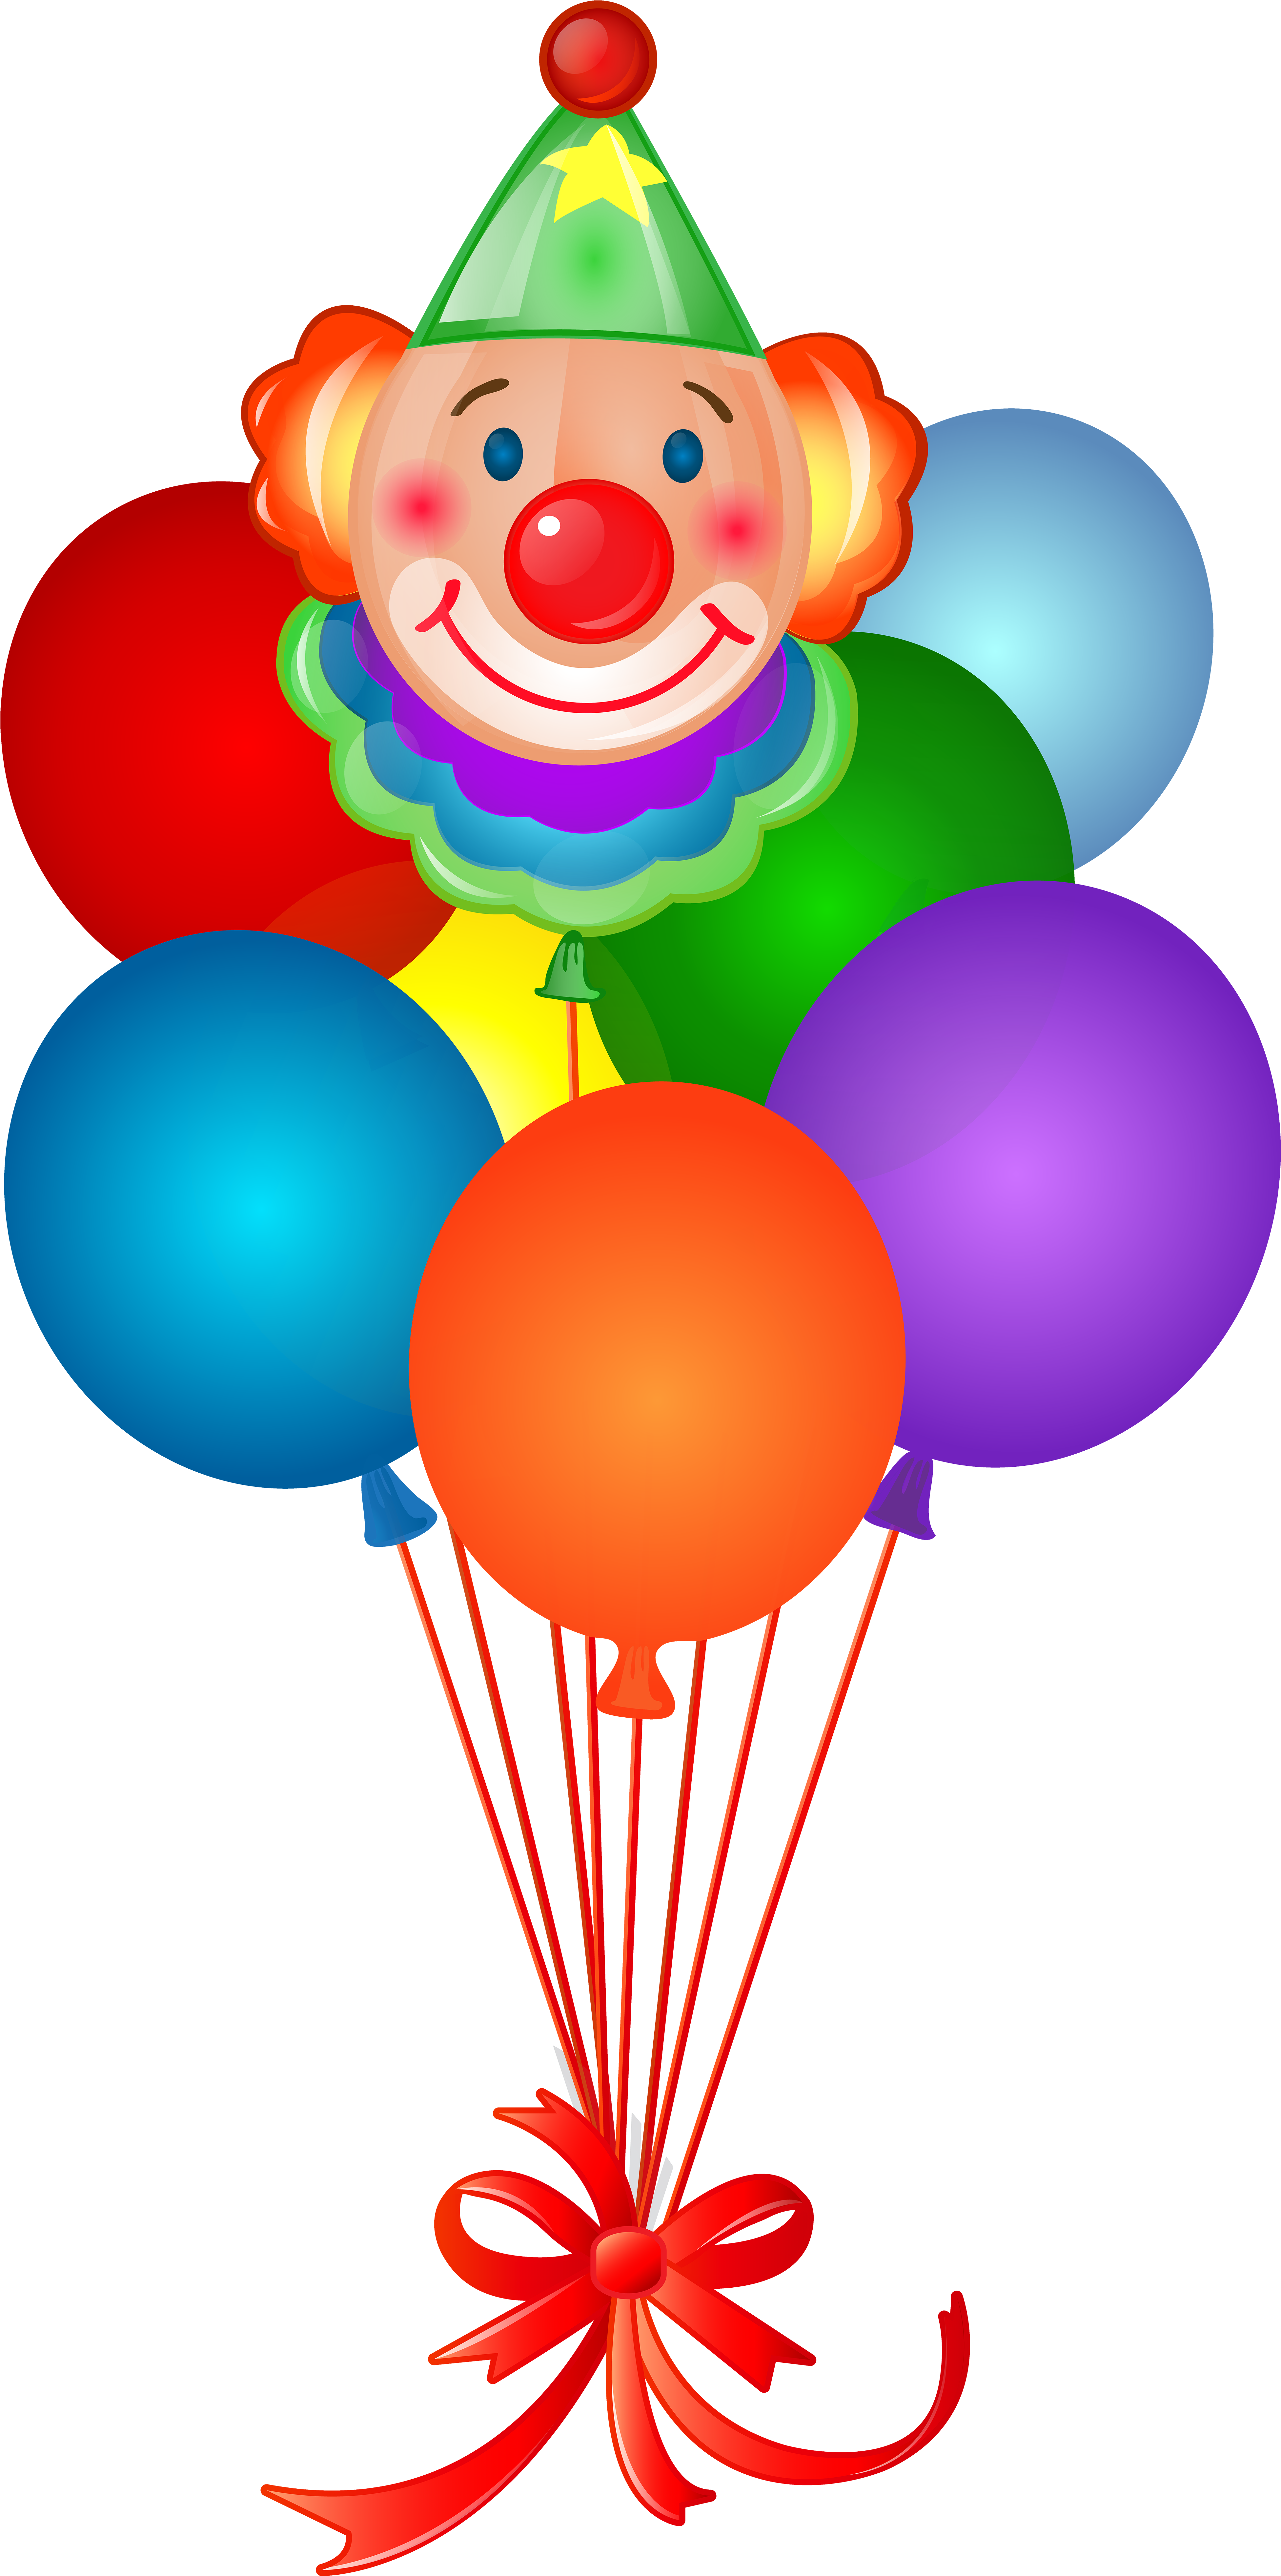 Клоун с шарами. Клоун с шариками. Клоун с воздушными шариками. Шарики без фона. Воздушные шары мультяшные.